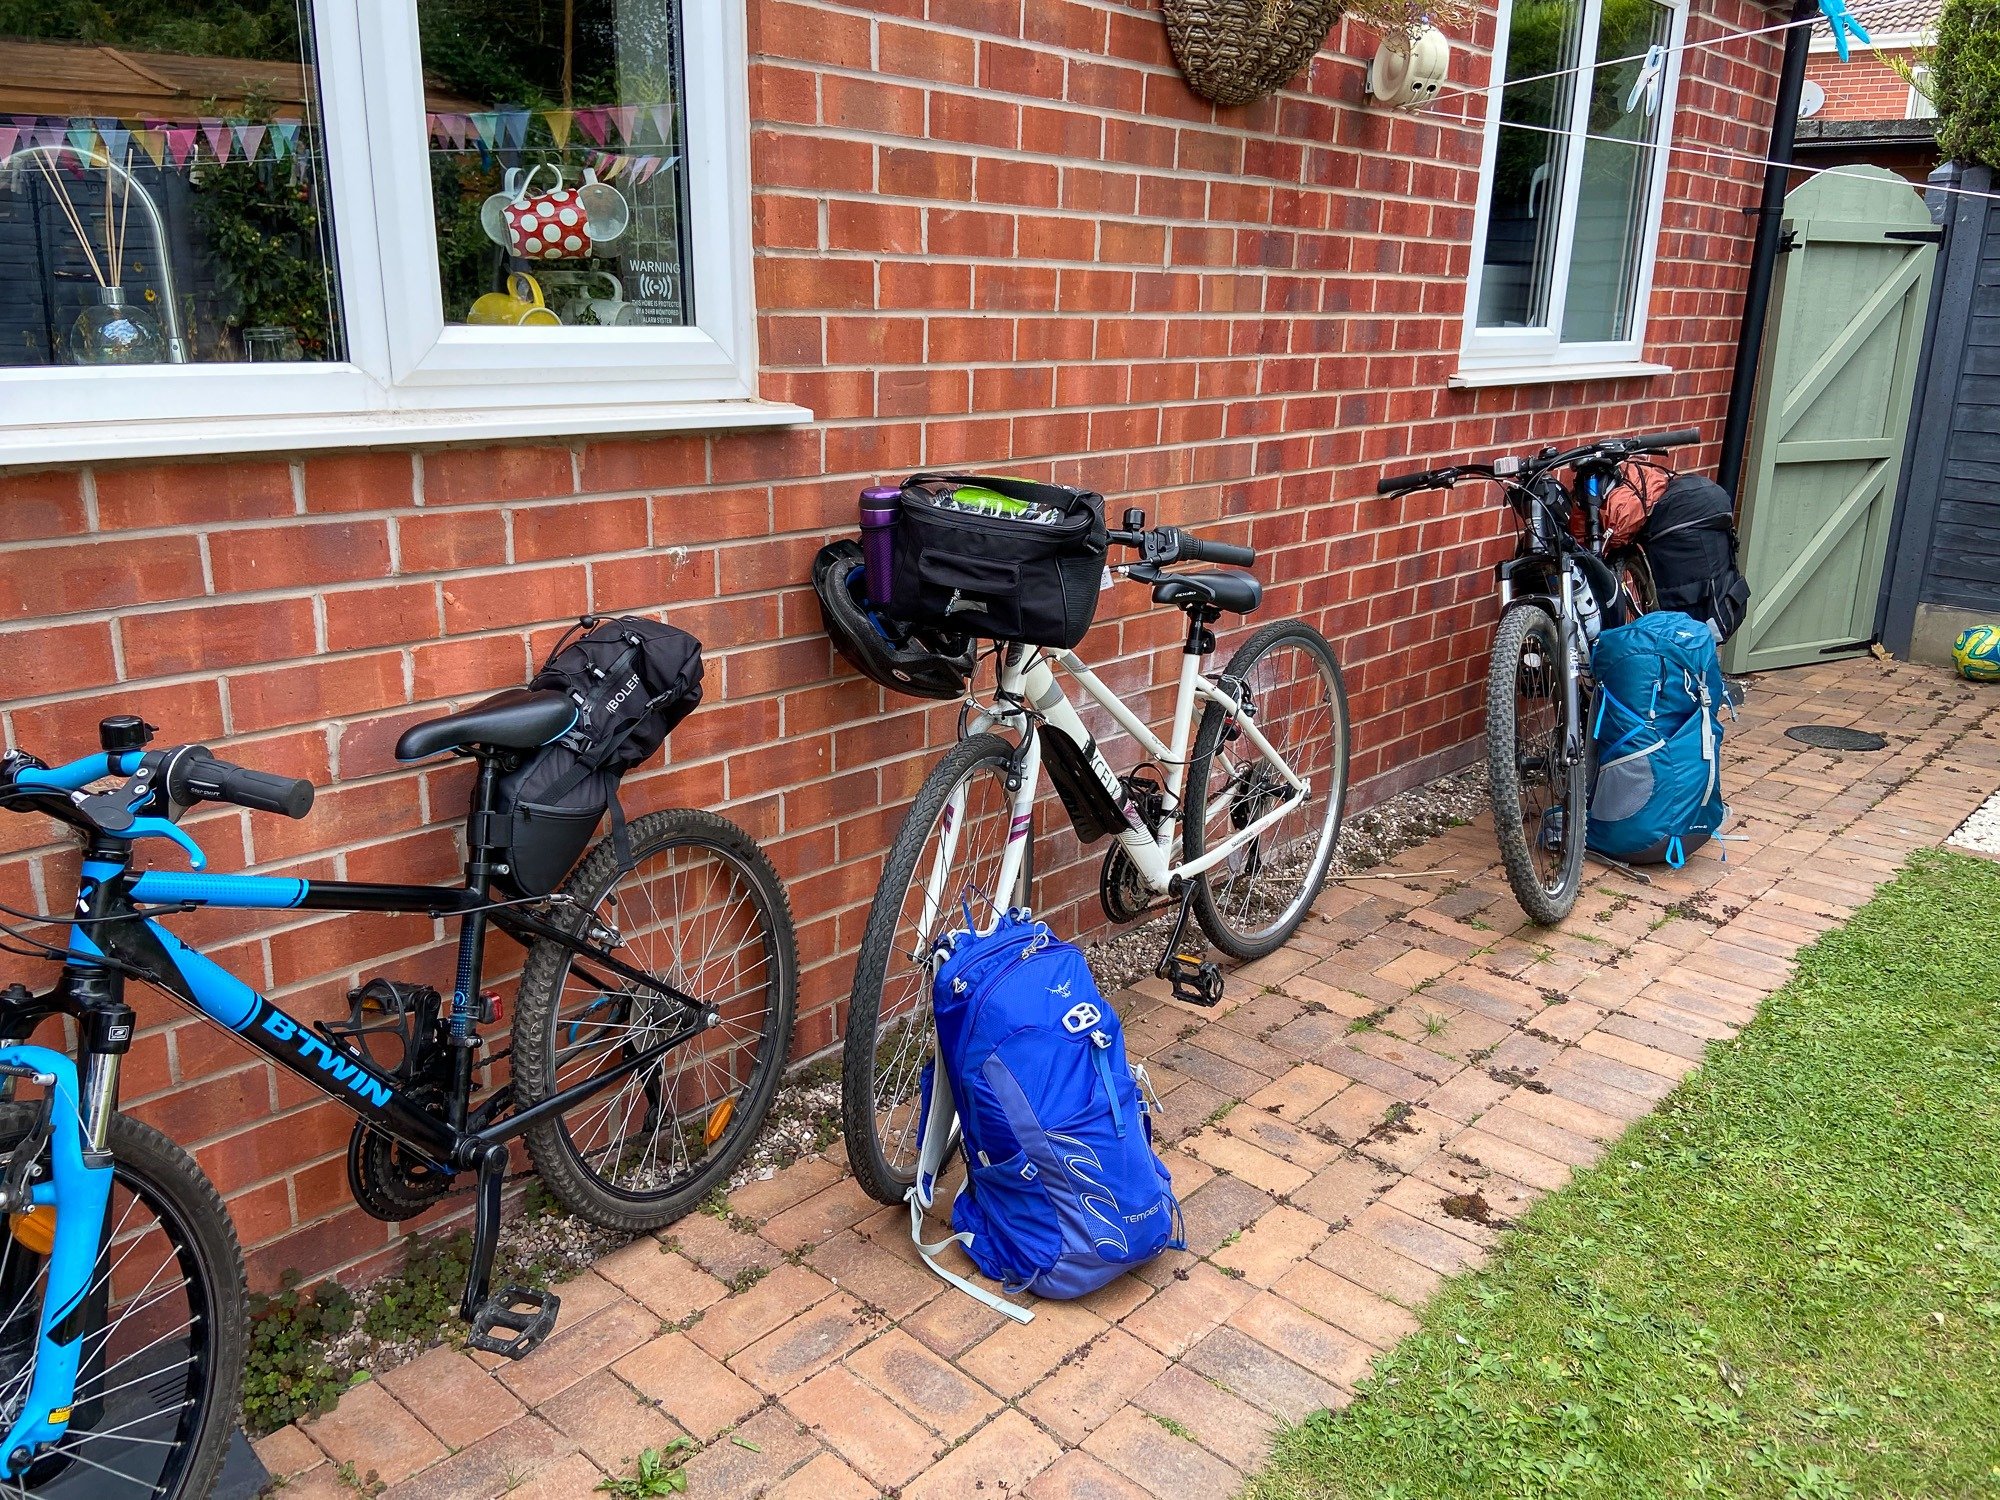 Bikes loaded for bikepacking